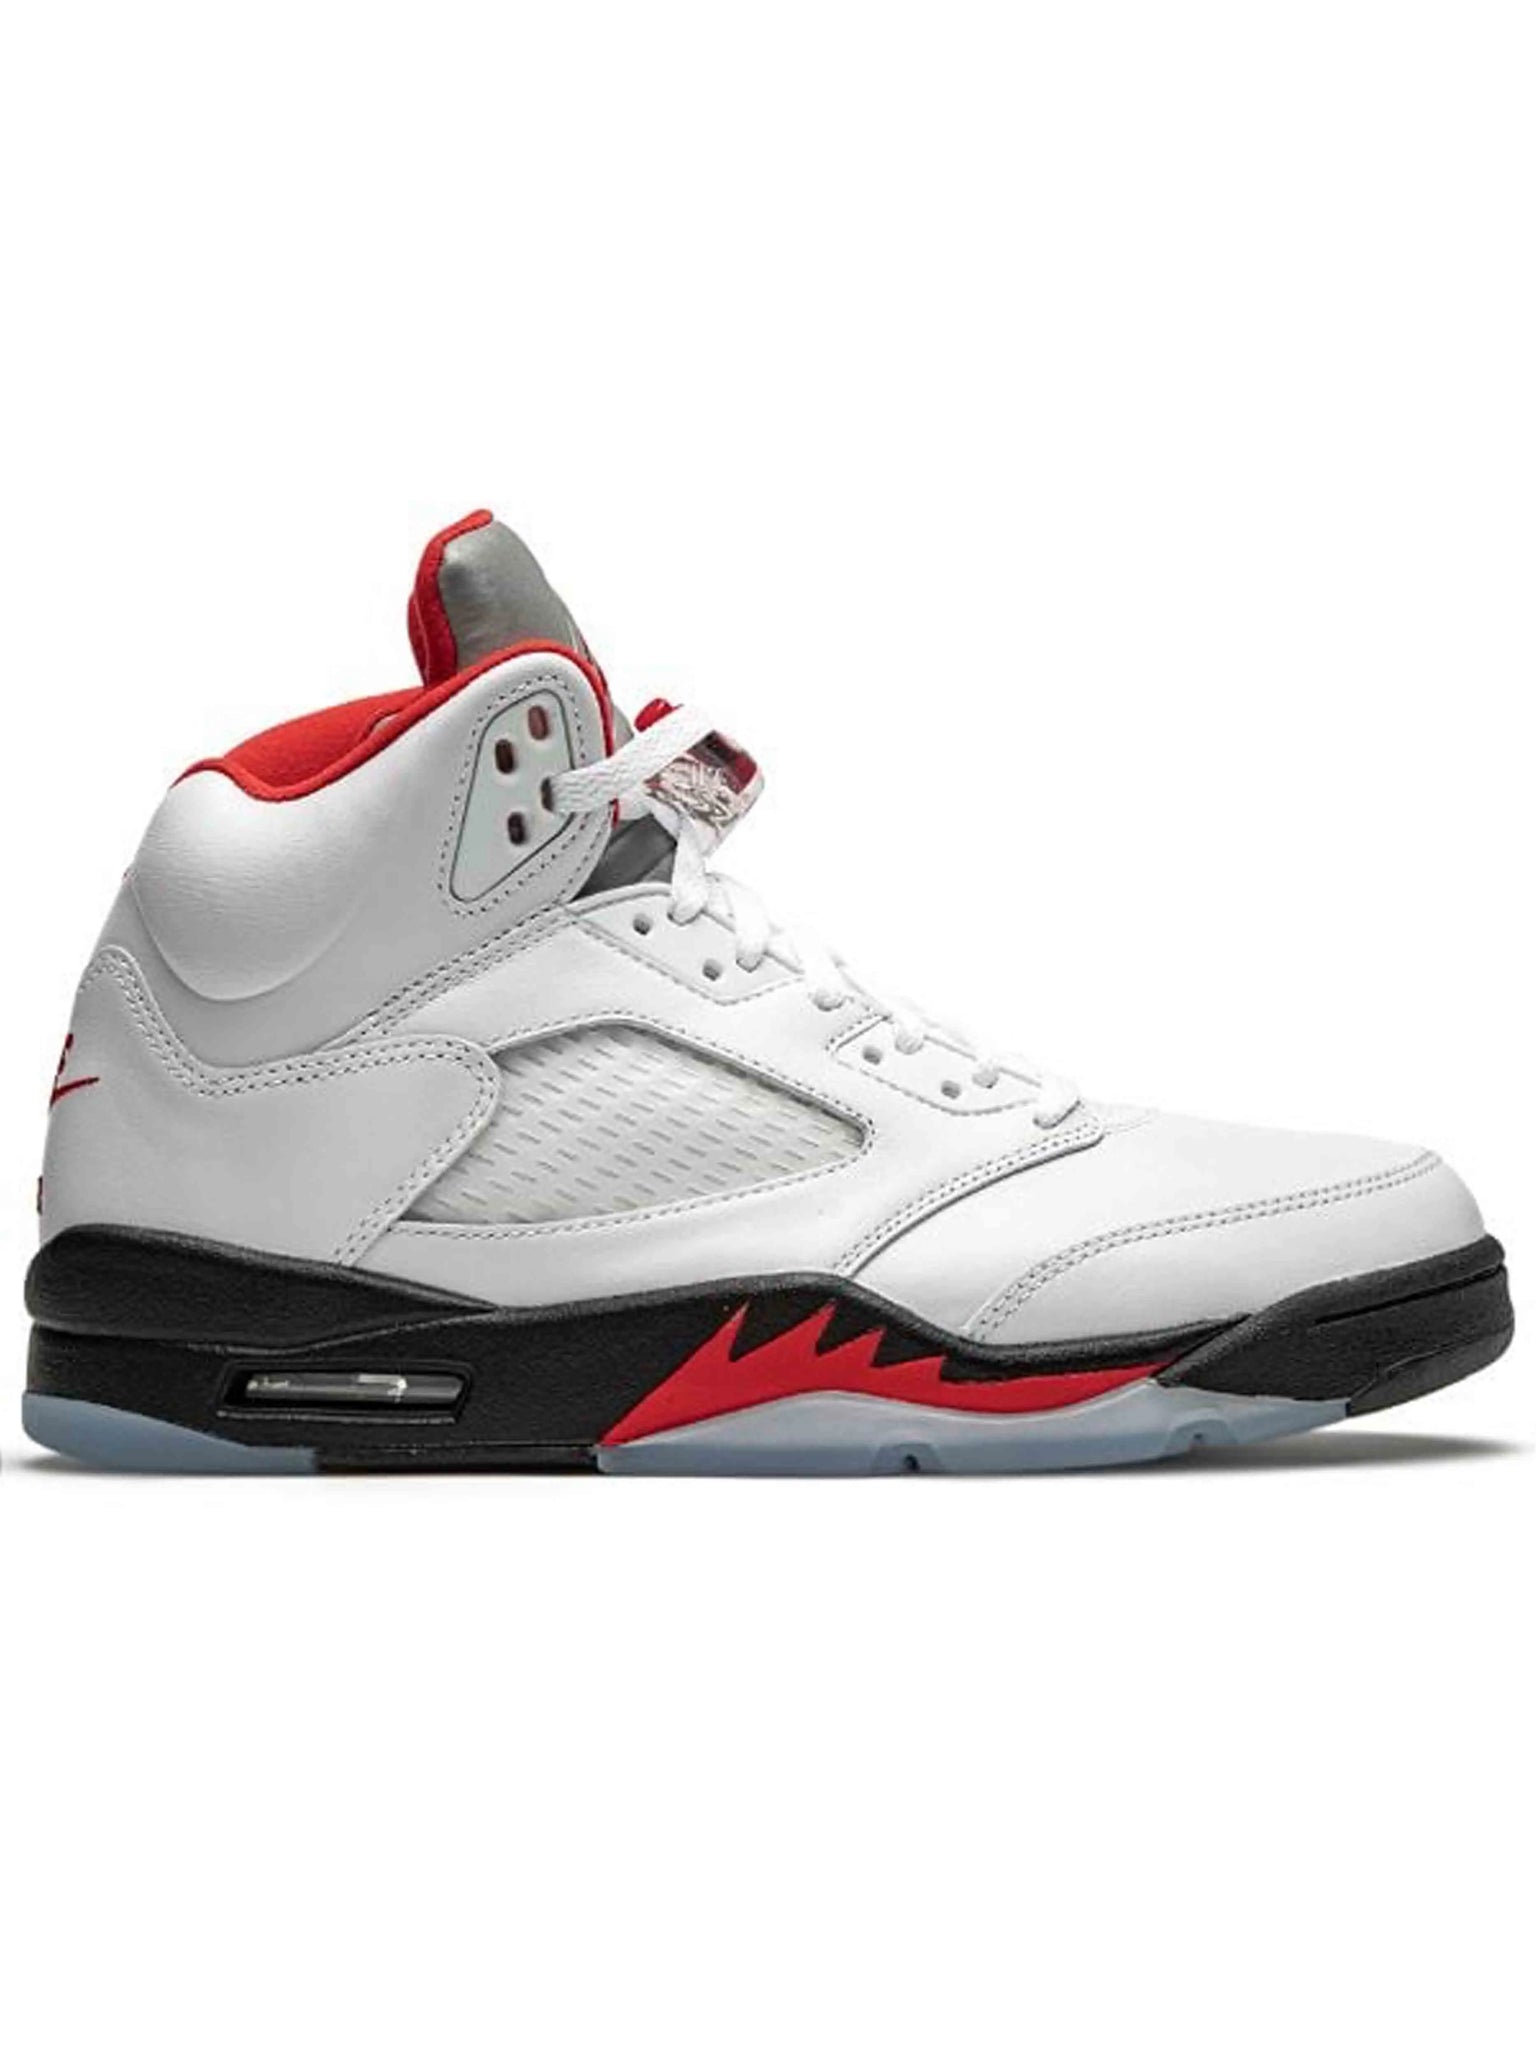 Nike Air Jordan 5 Retro Fire Red [2020] Prior